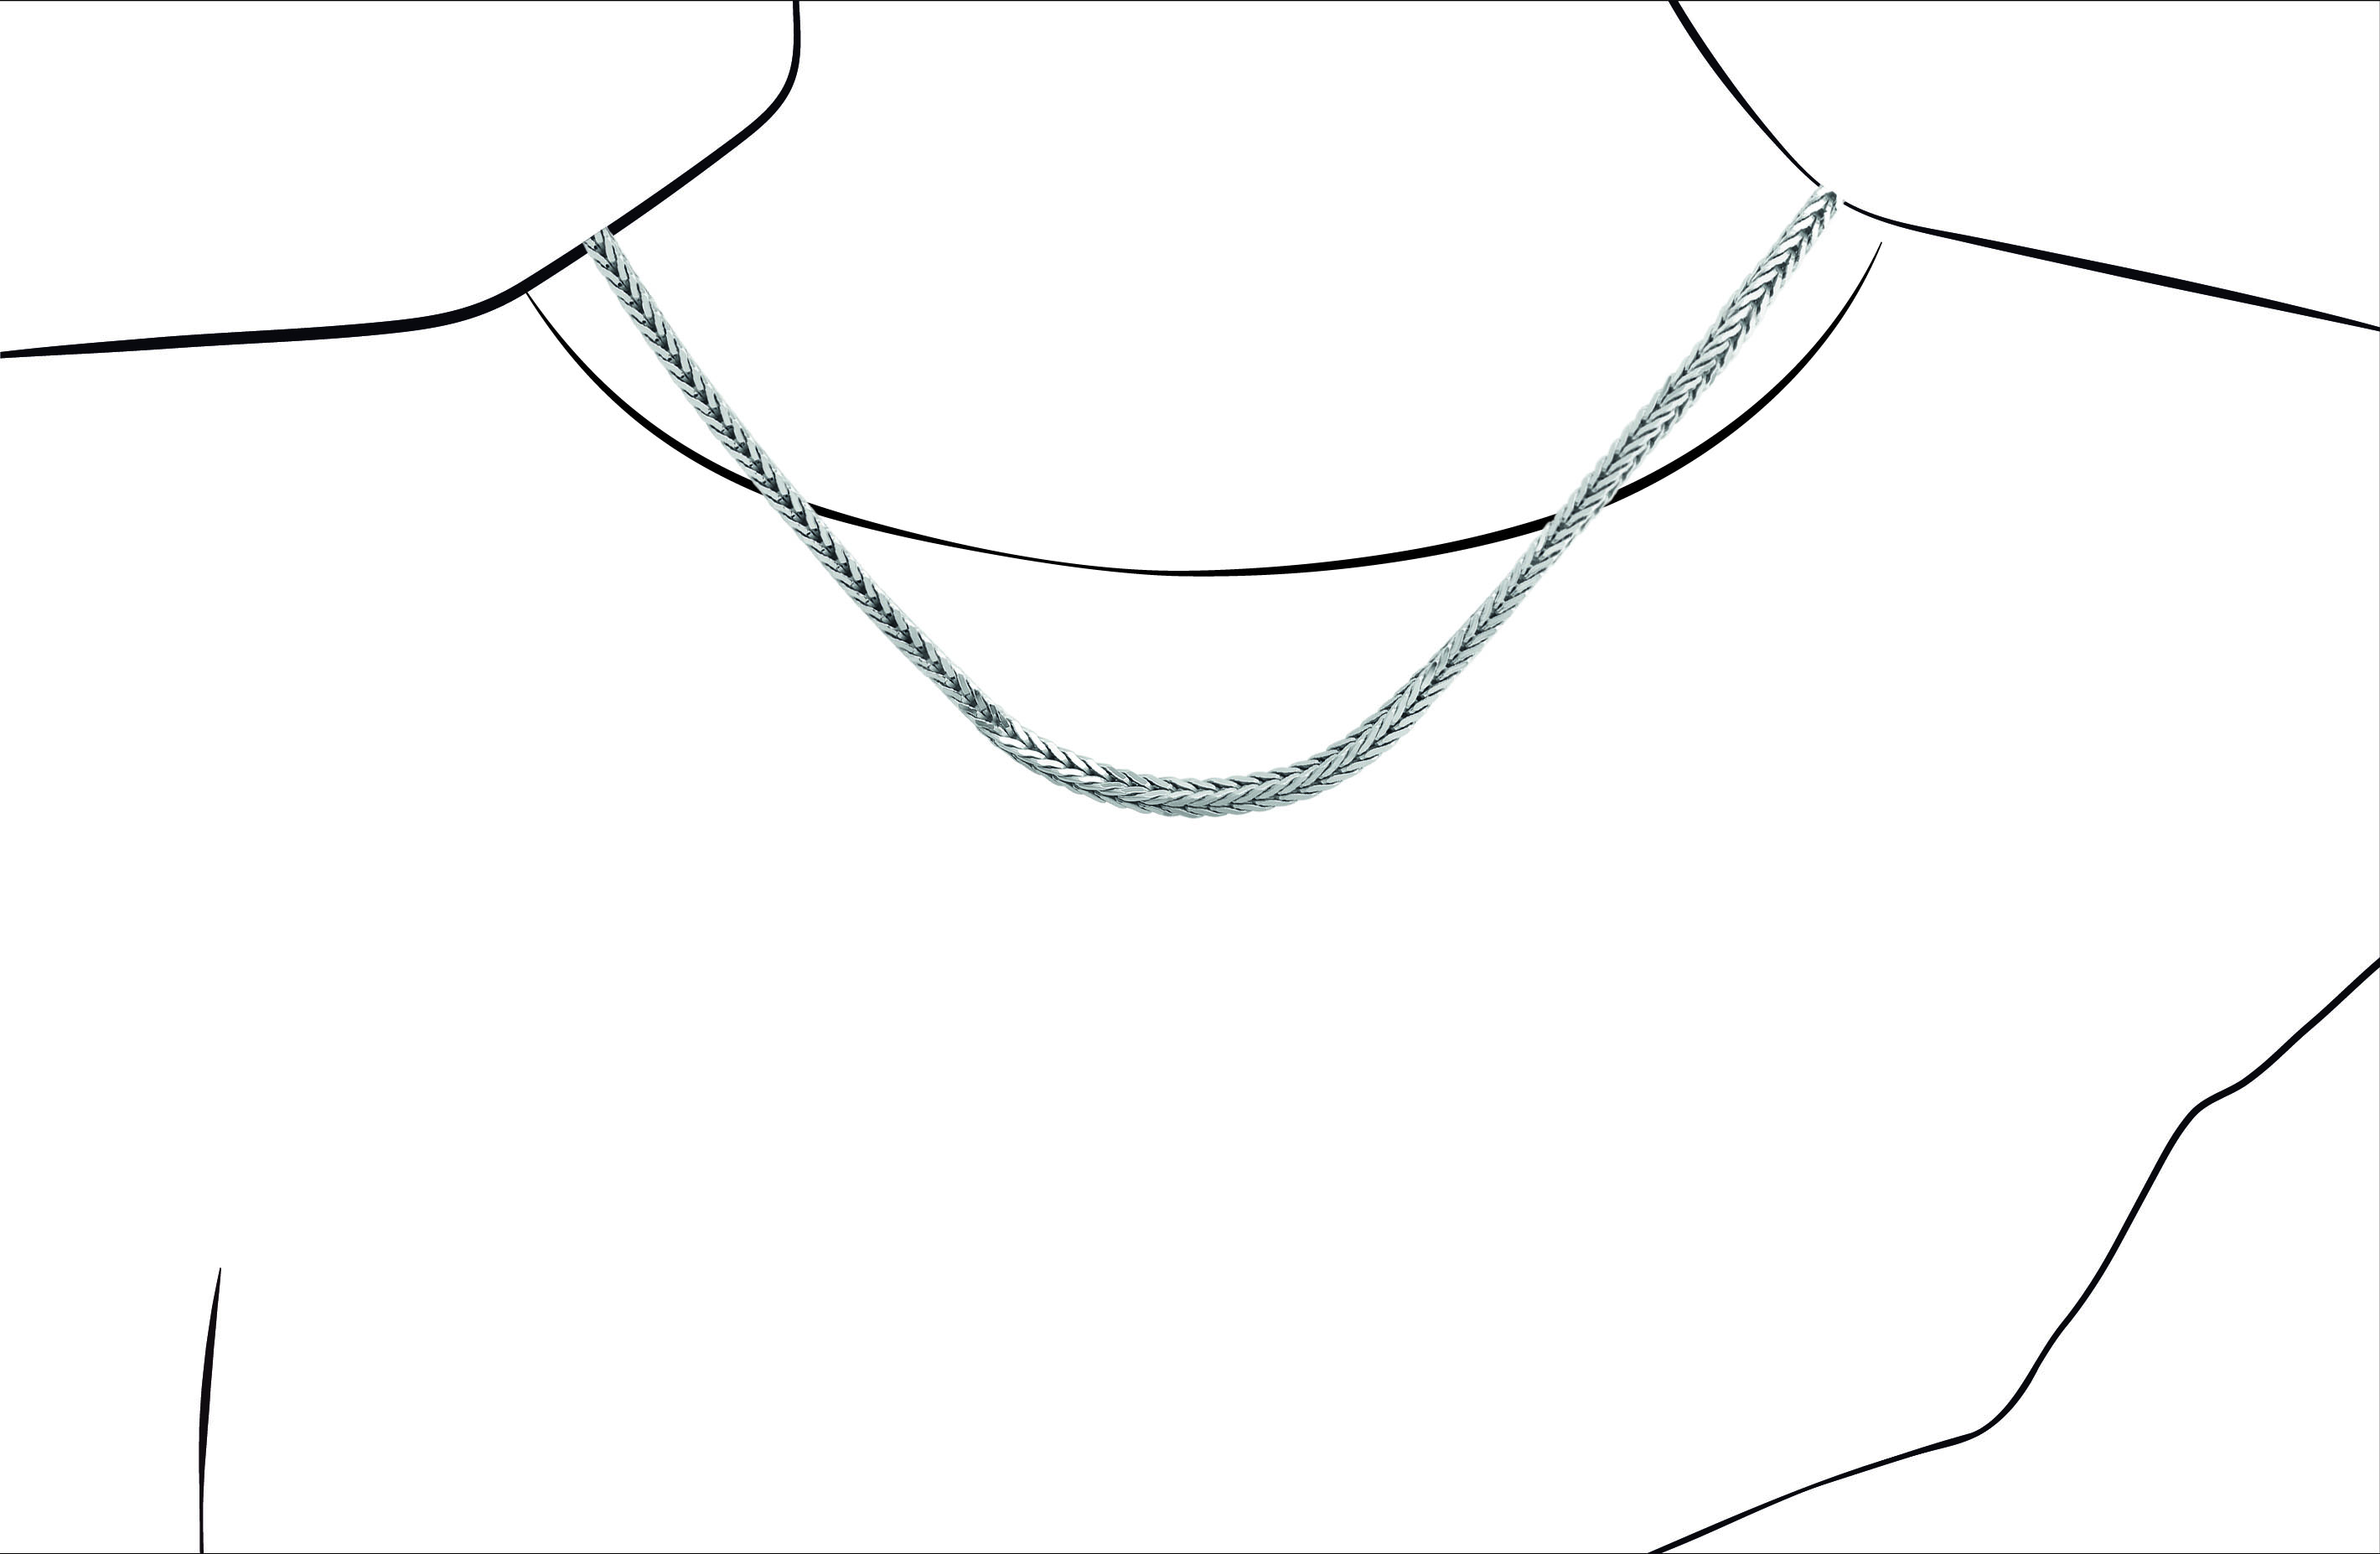 Joia: colar;Material: prata 925;Peso: 19.8 gr;Cor: branco;Medida: 48 cm + 5 cm